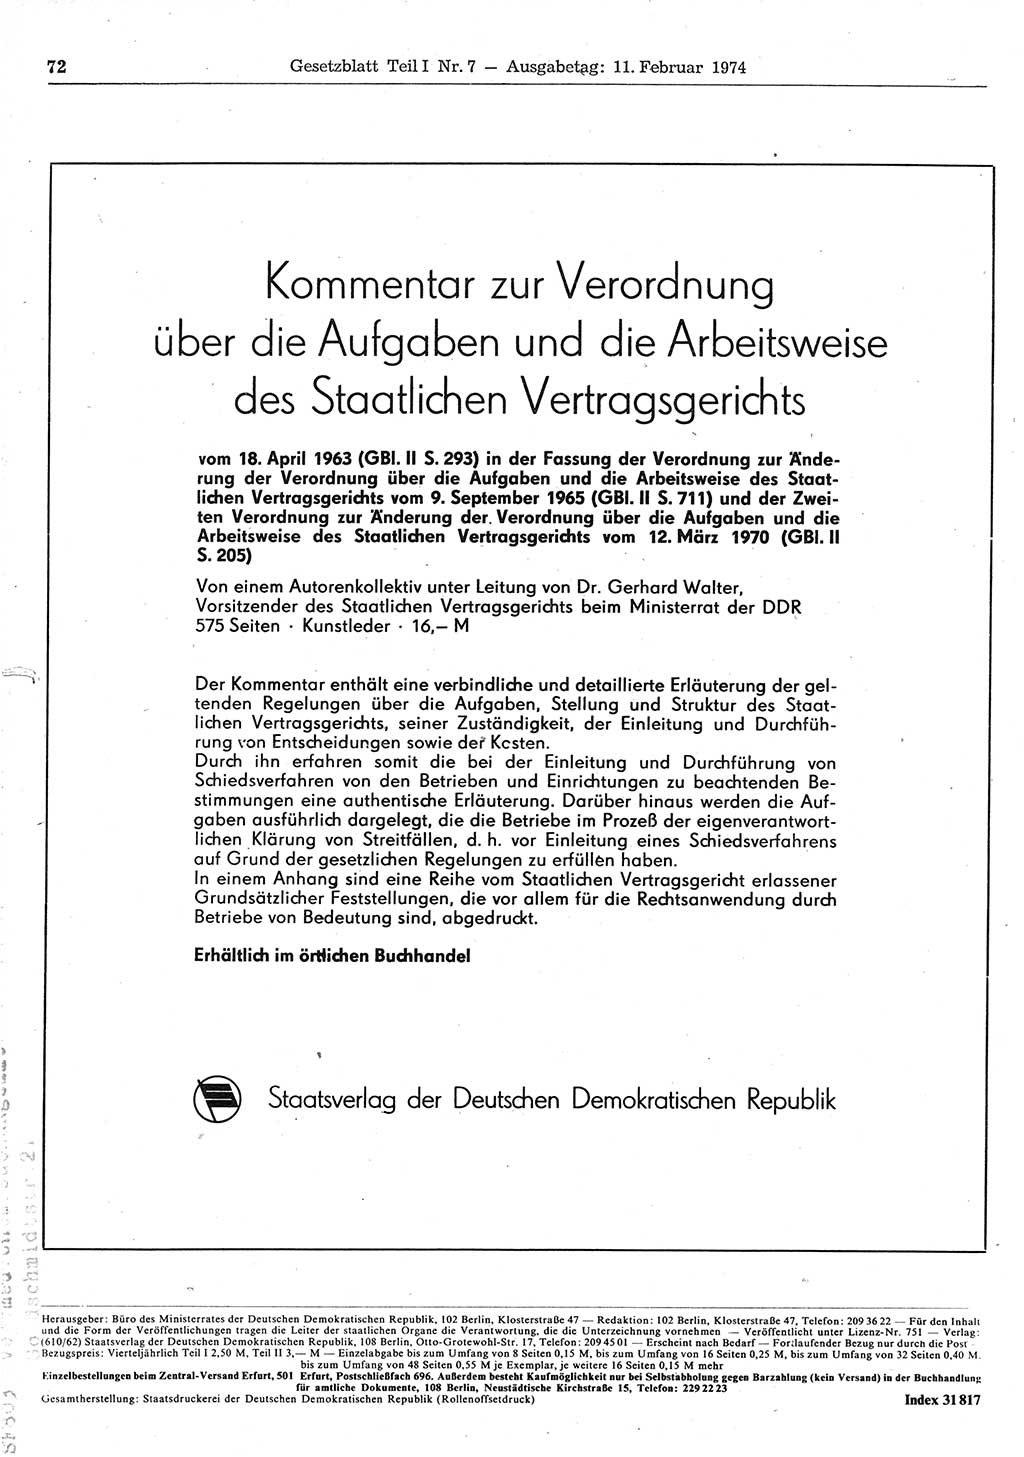 Gesetzblatt (GBl.) der Deutschen Demokratischen Republik (DDR) Teil Ⅰ 1974, Seite 72 (GBl. DDR Ⅰ 1974, S. 72)